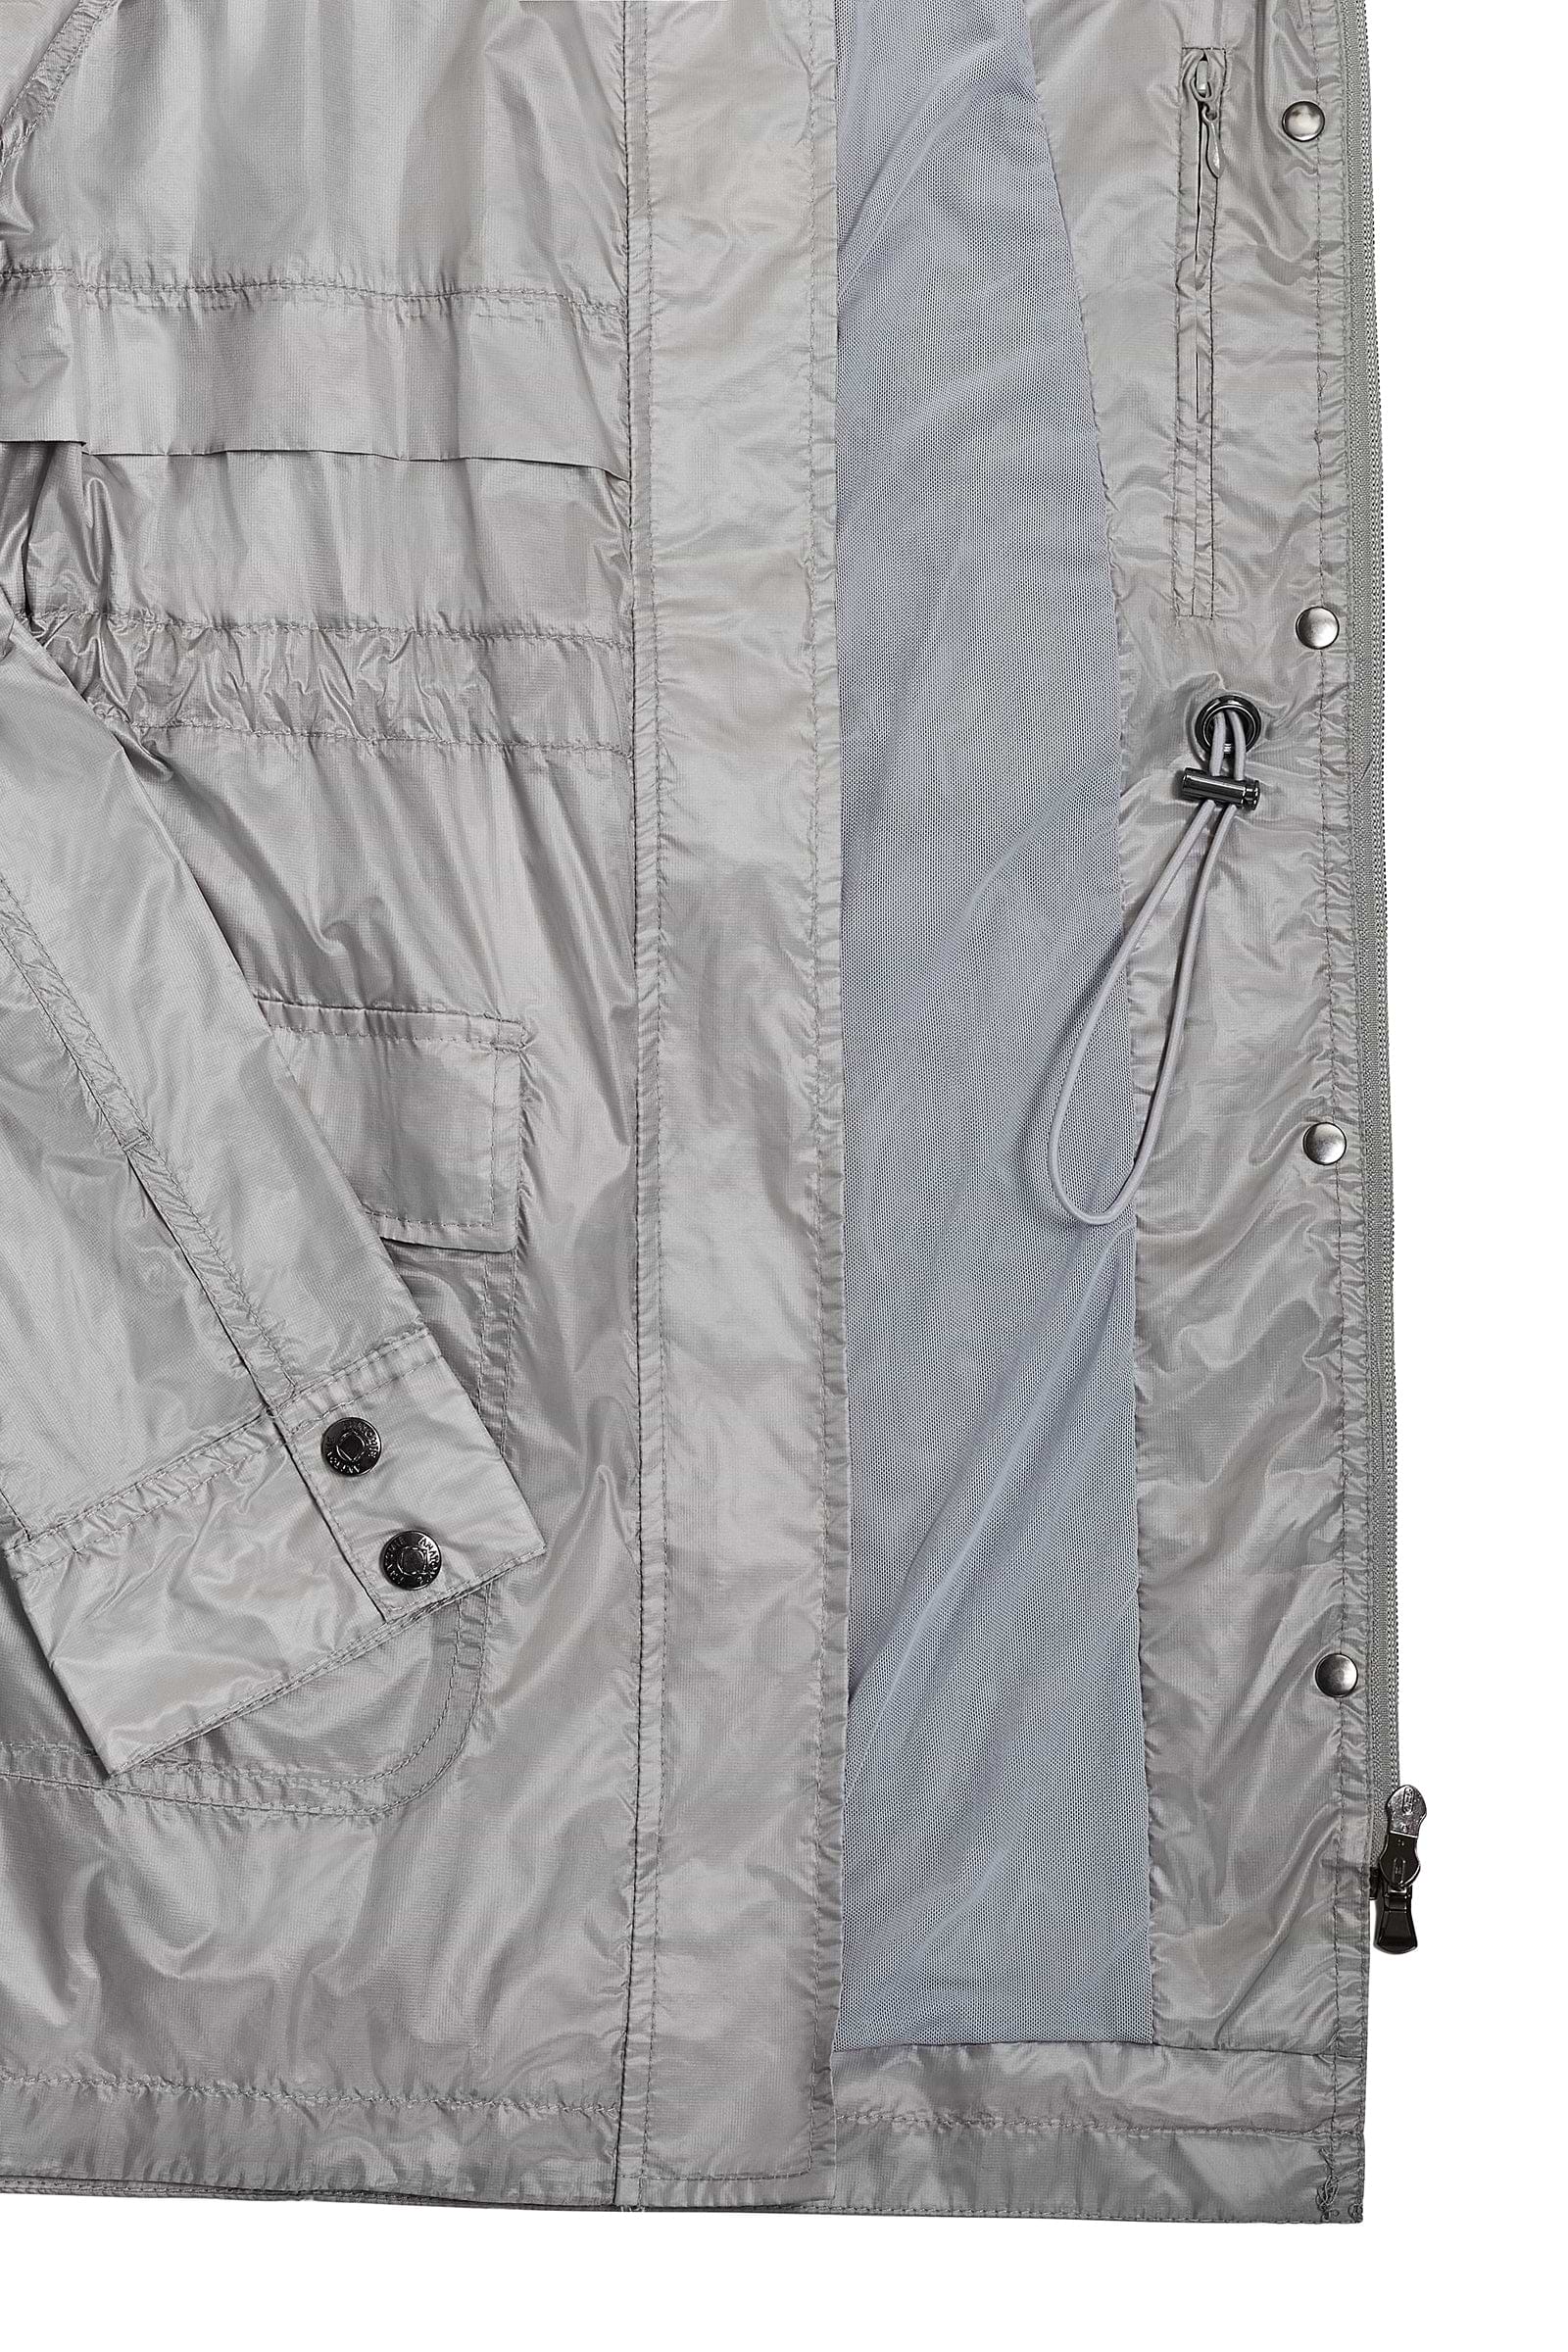 The Best Travel Jacket. Details of a Ramona Windbreaker Jacket in Silver Grey.